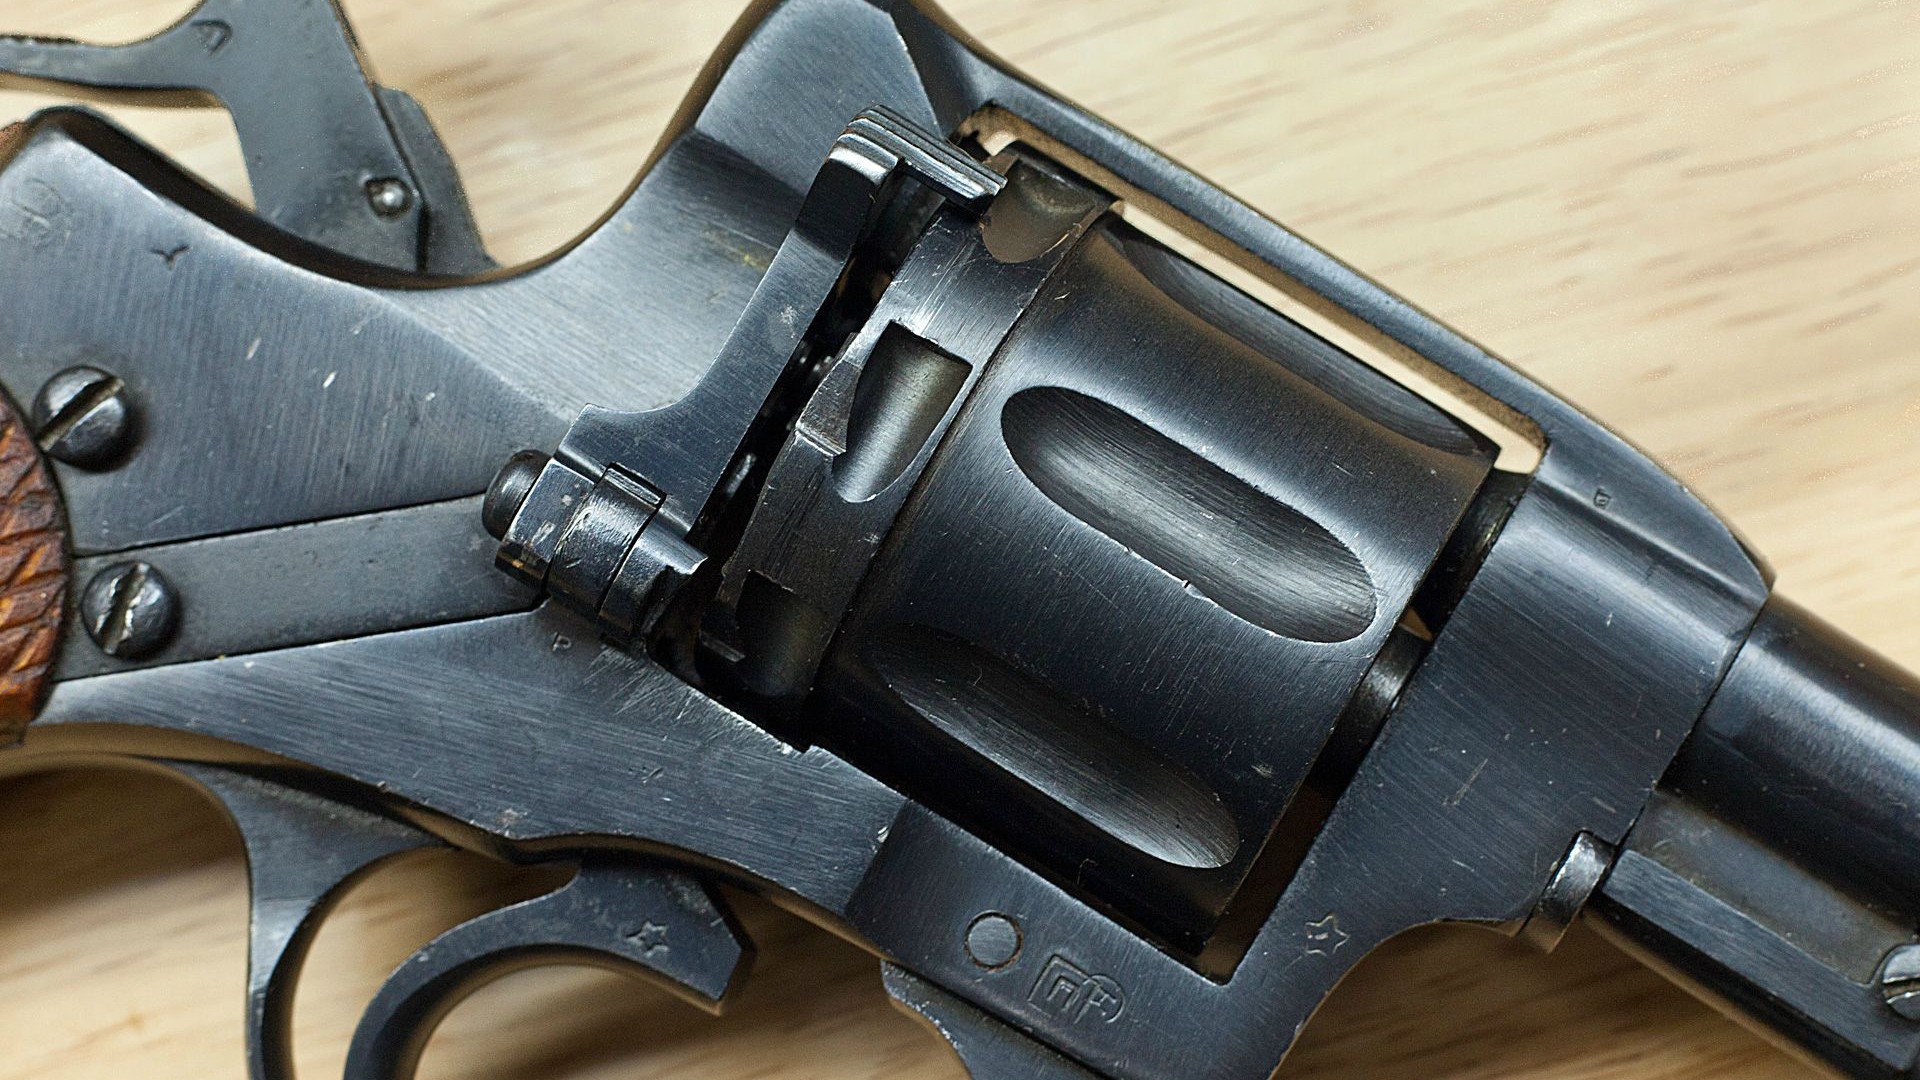 General 1920x1080 gun pistol revolver Nagant M1895 weapon Russian/Soviet firearms closeup wooden surface